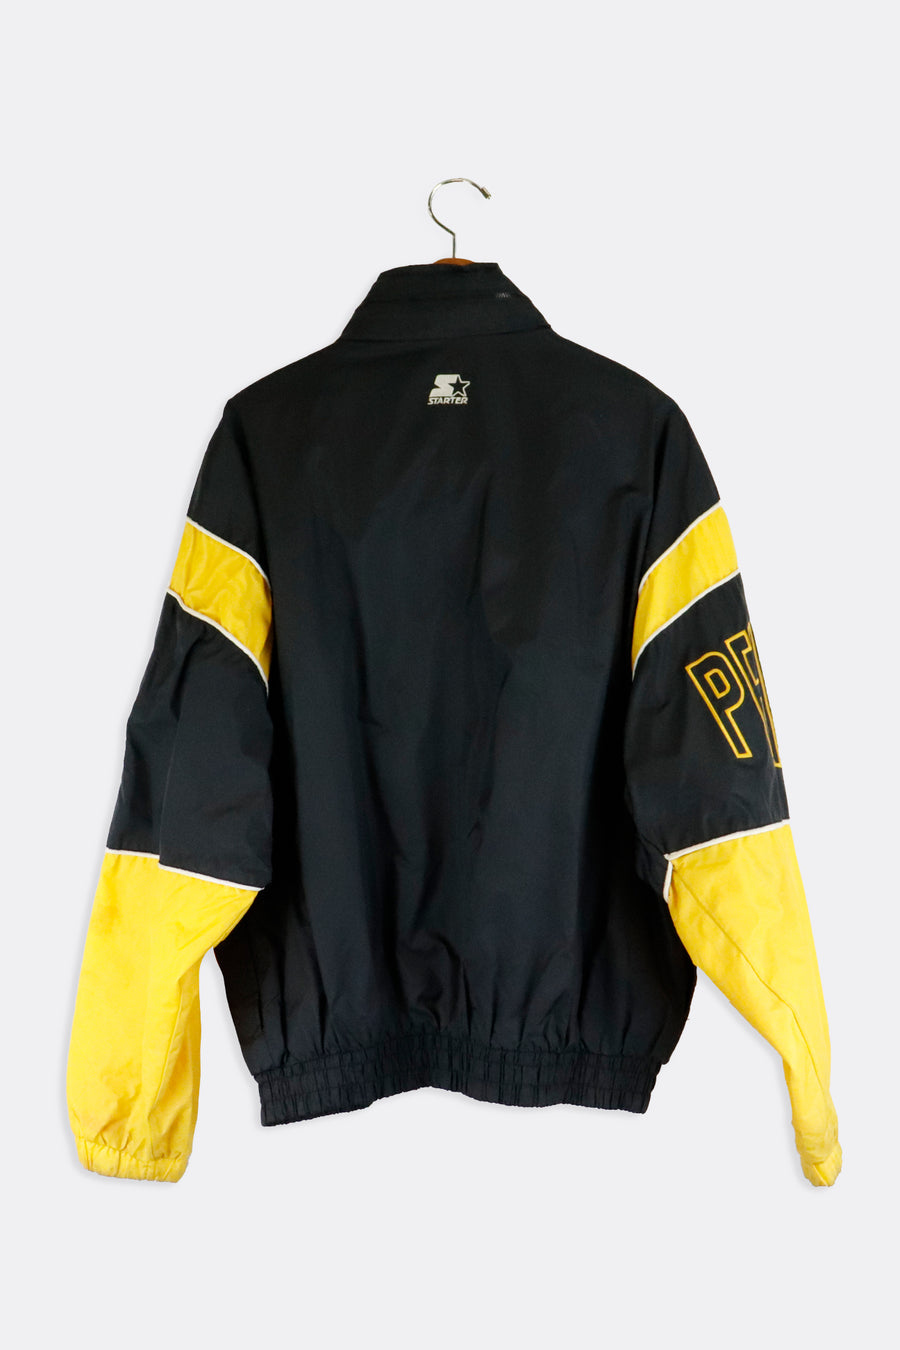 Vintage Starter NHL Pittsburgh Penguins Zip Up Jacket Sz XL